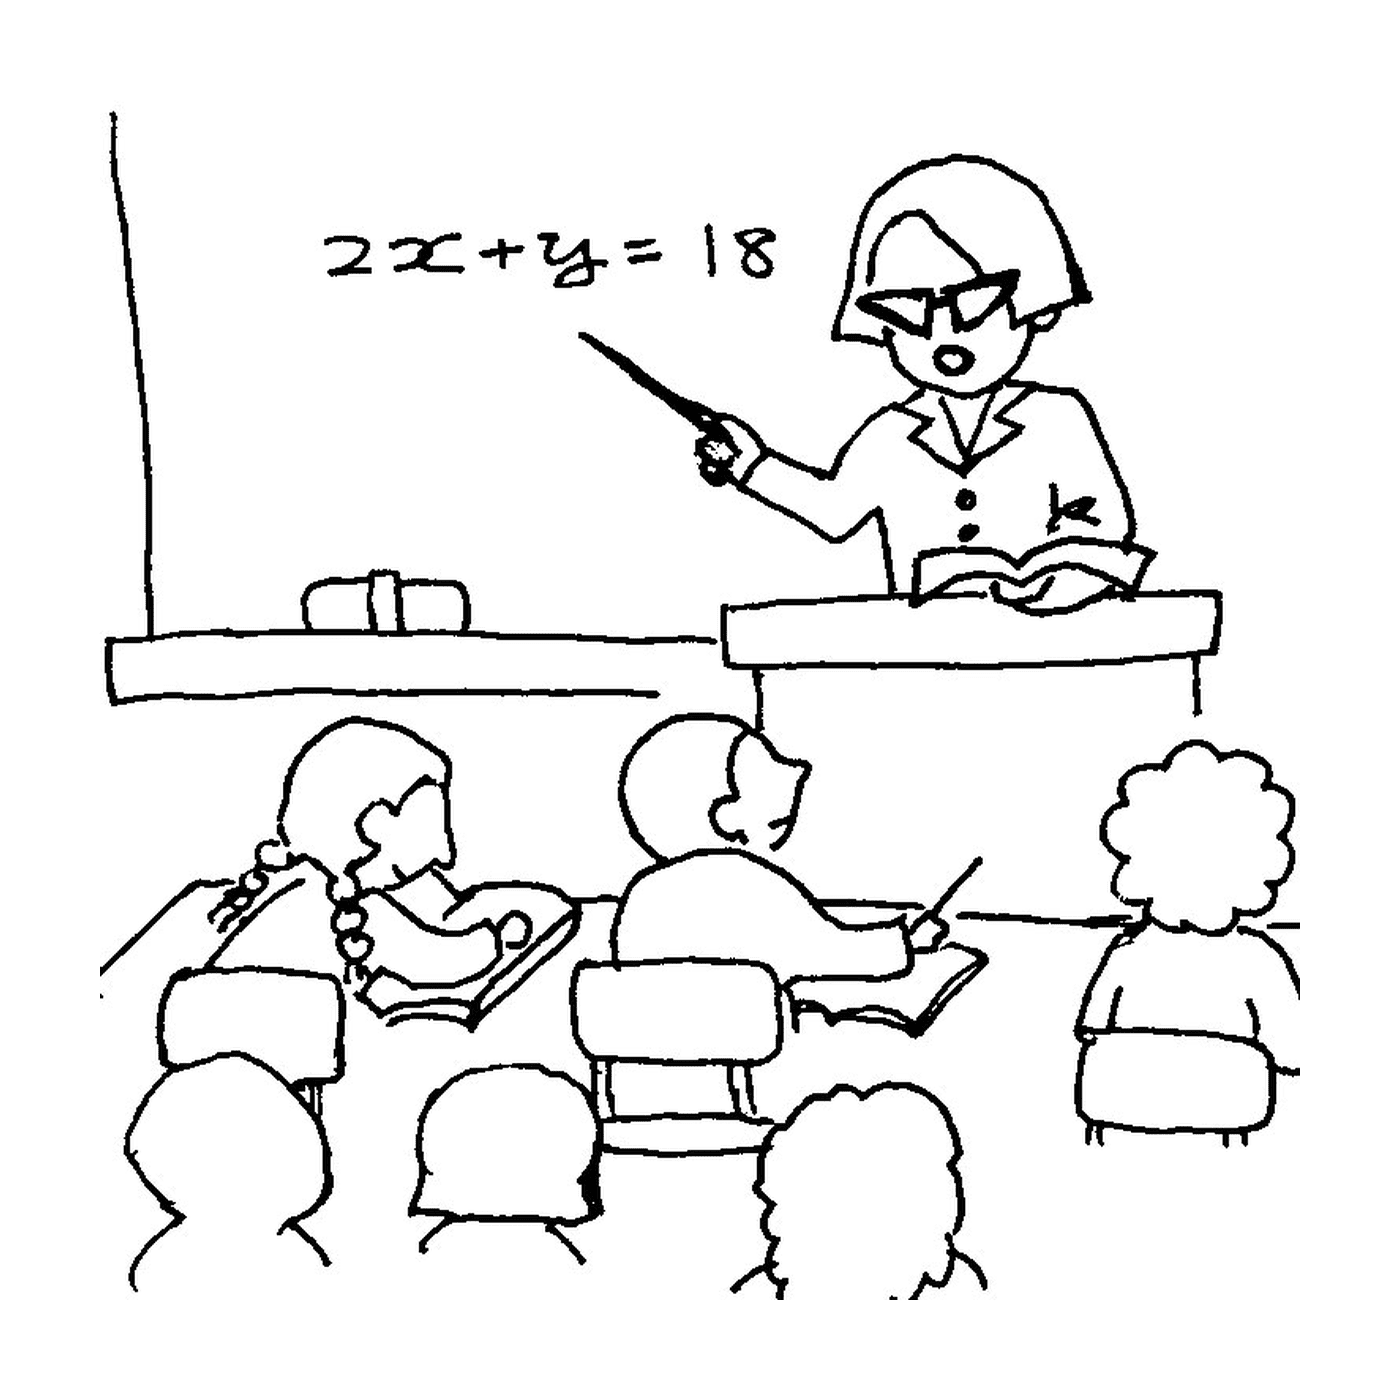   Femme donnant un cours à un groupe 